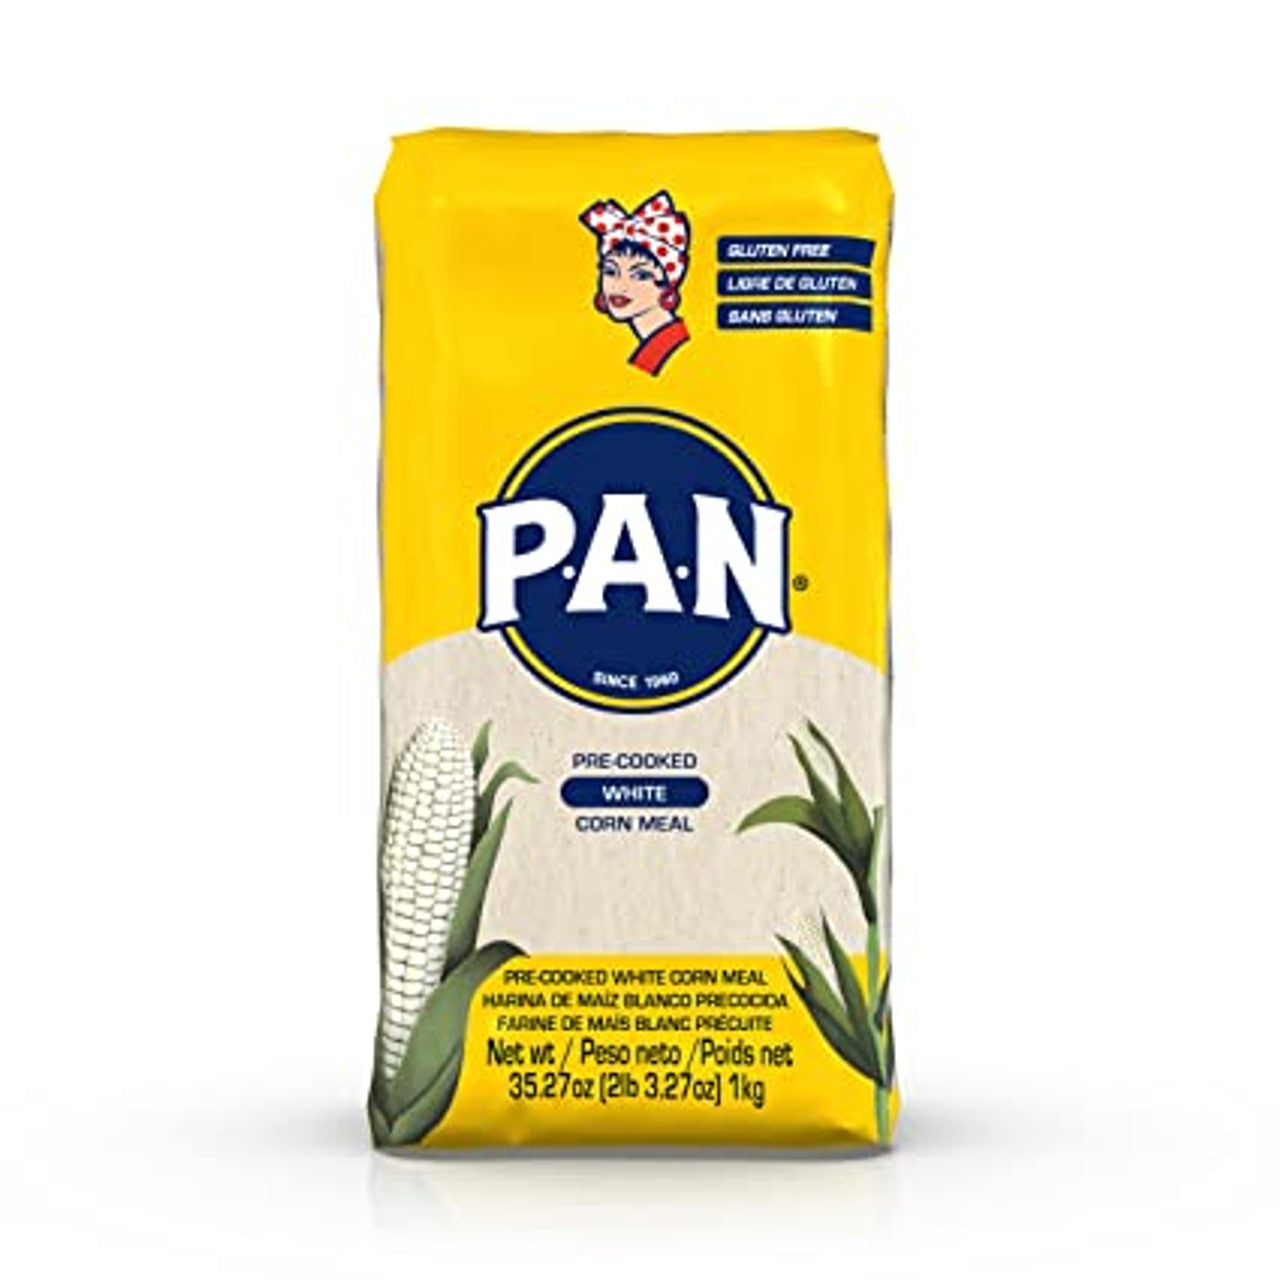 P.A.N. White Corn Meal 10/2.2lb